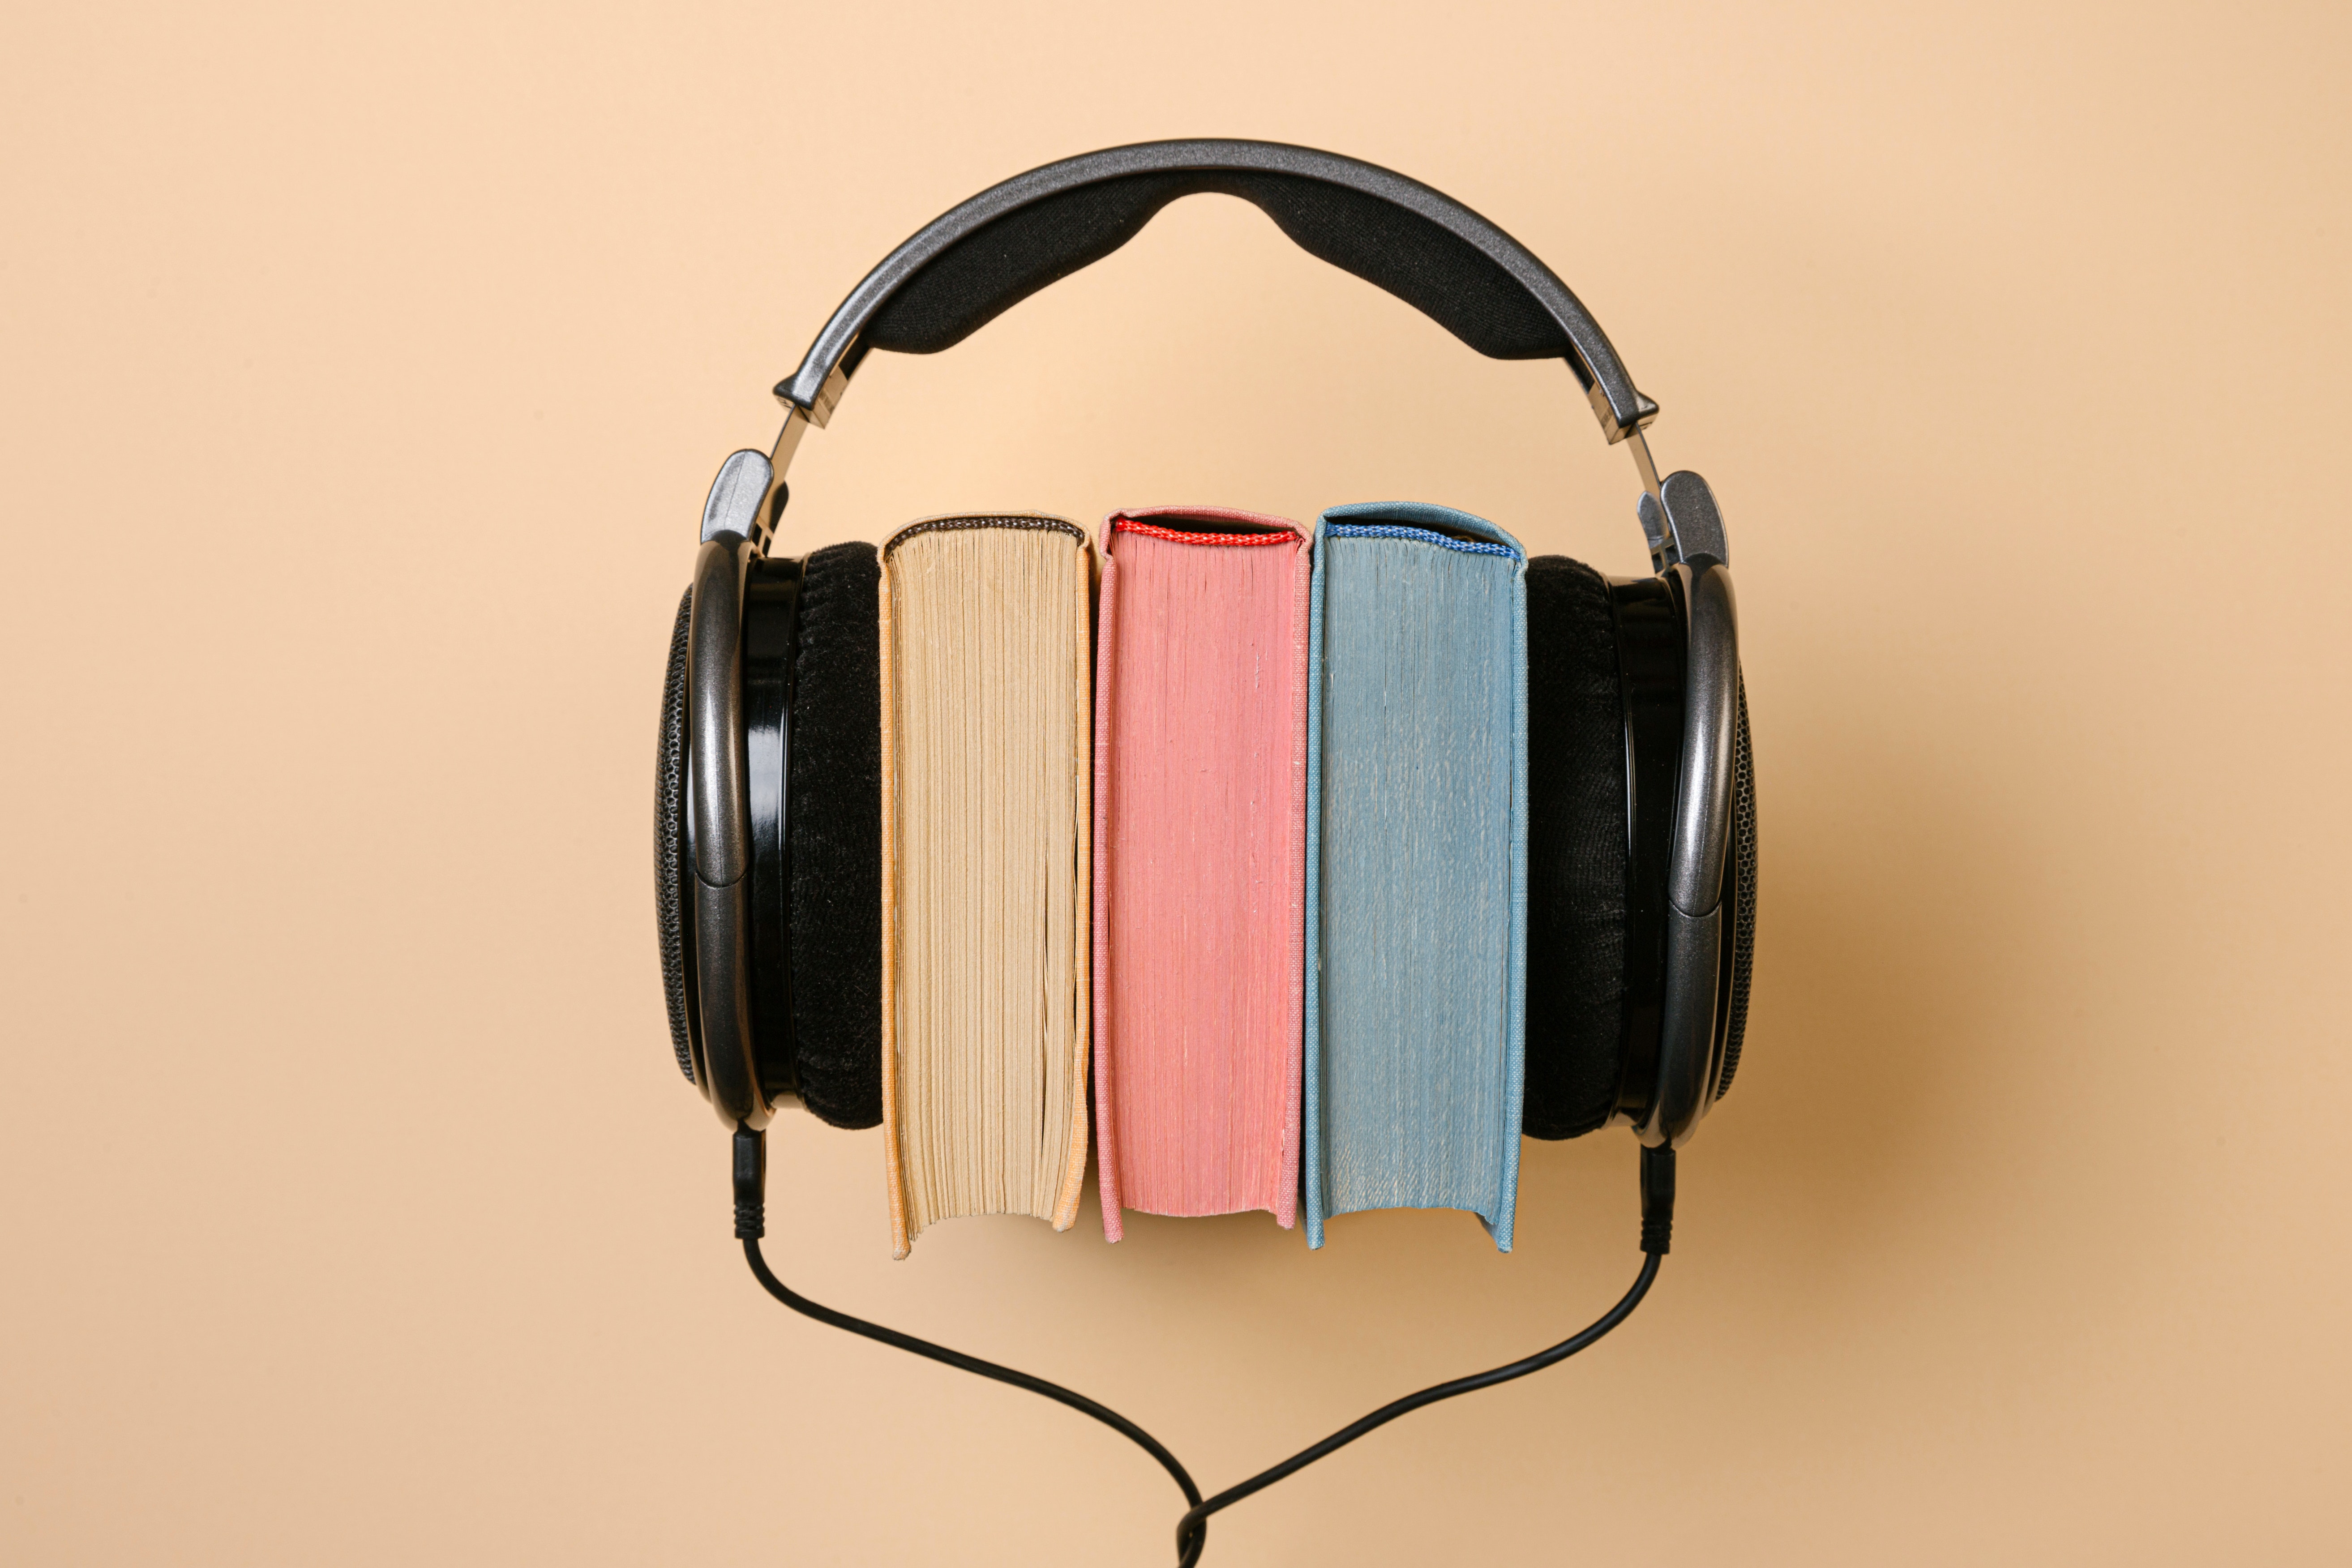 Headphones around some books.